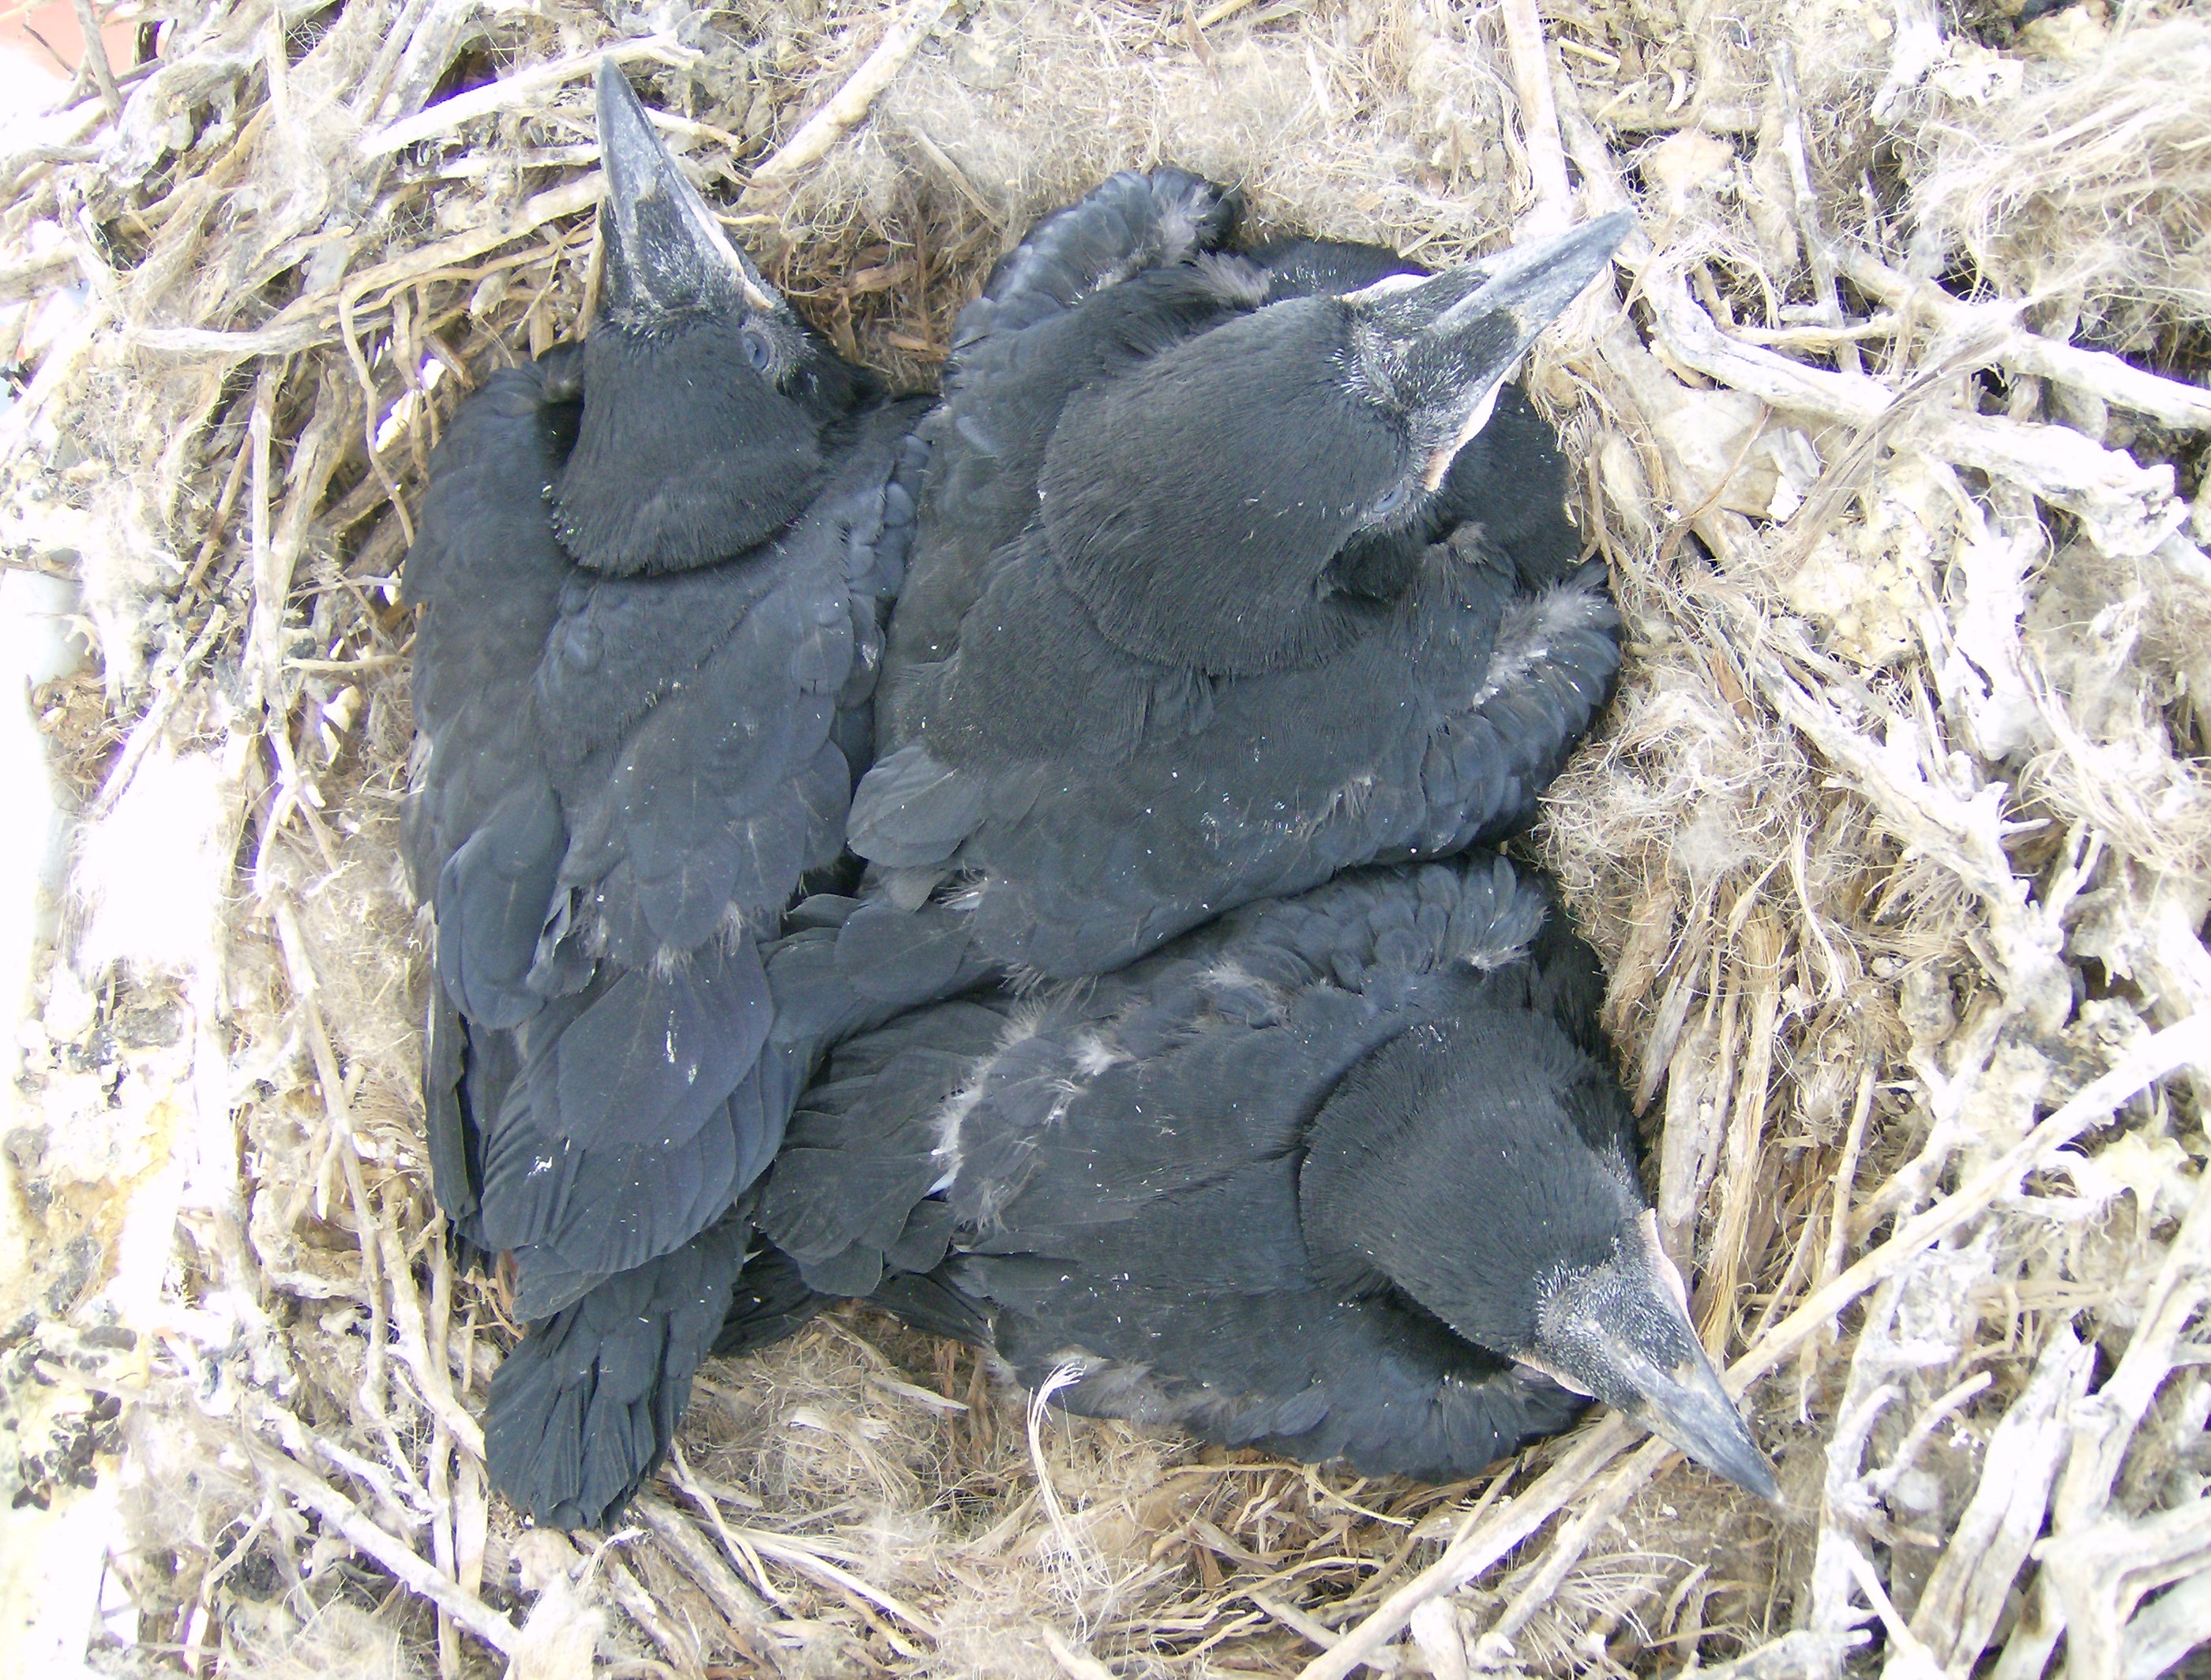 Crow babies